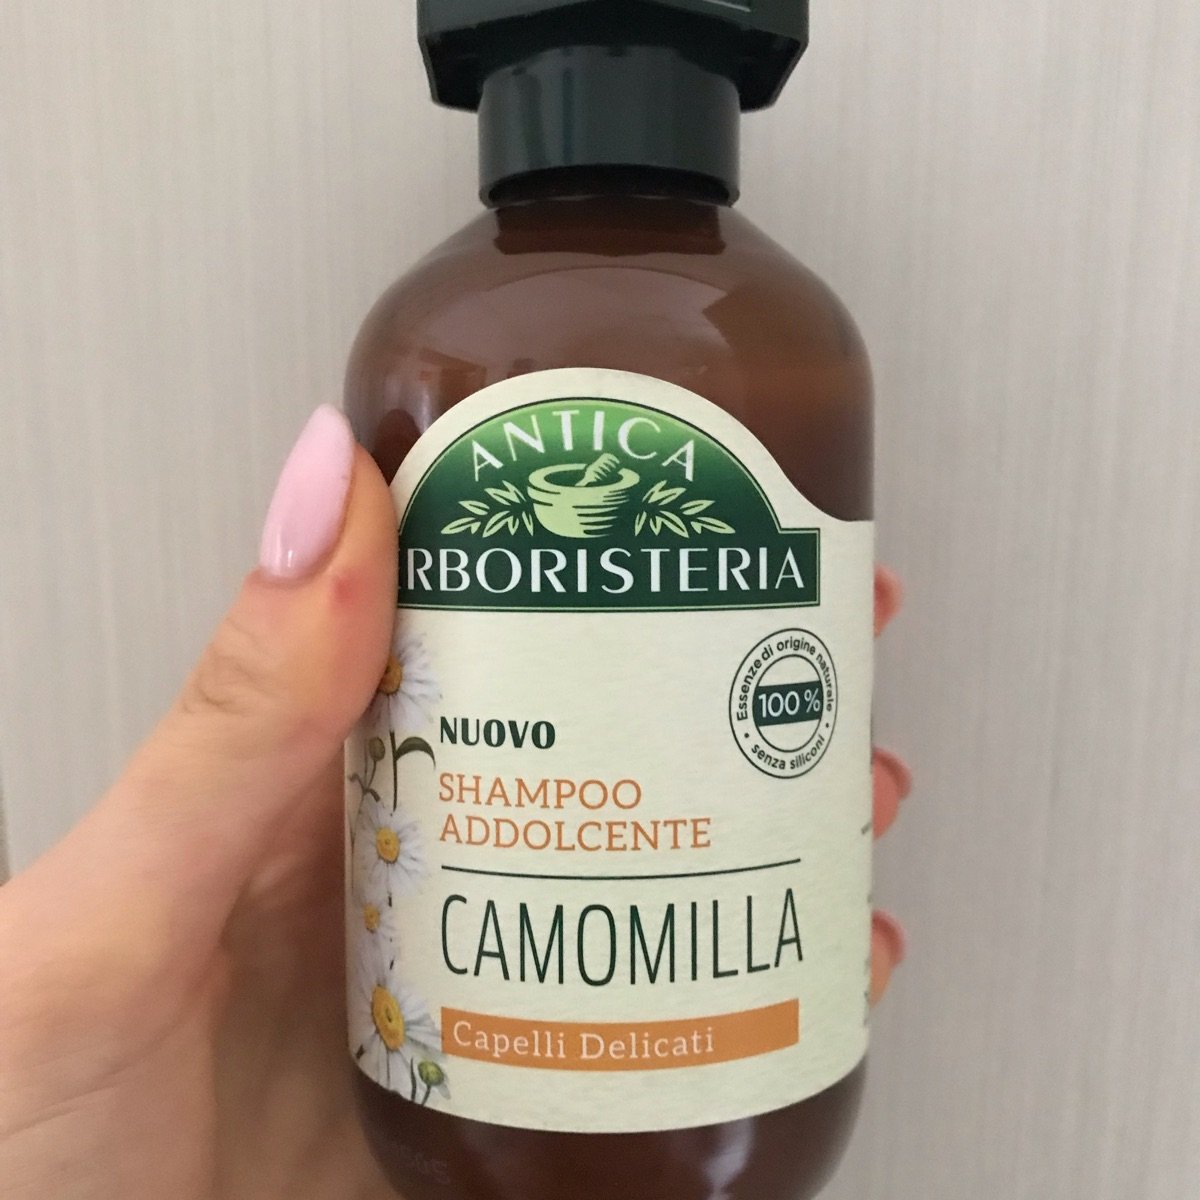 Antica erboristeria Shampoo addolcente Camomilla Reviews | abillion